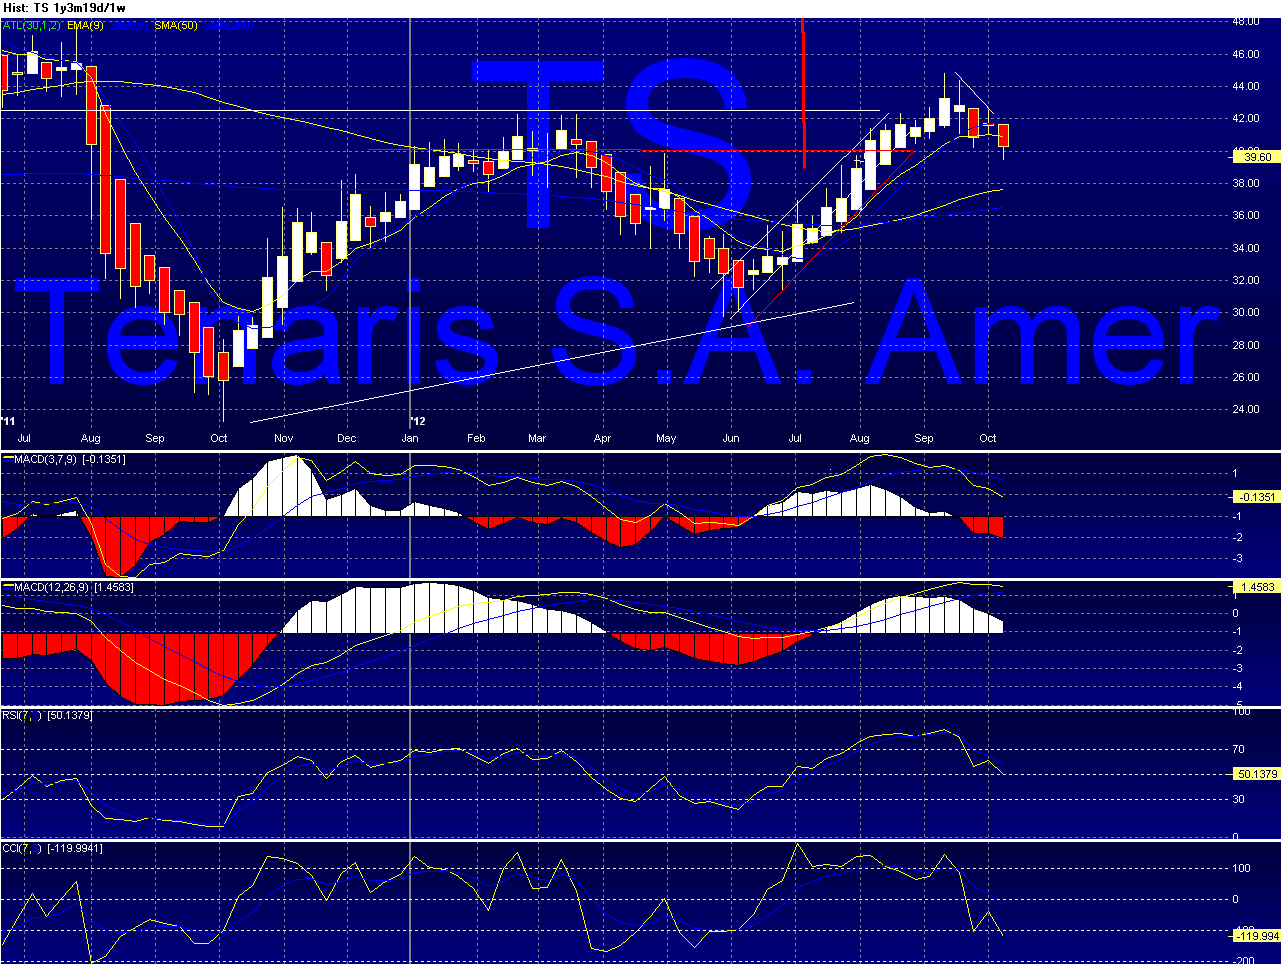 TS - Tenaris Chart_34